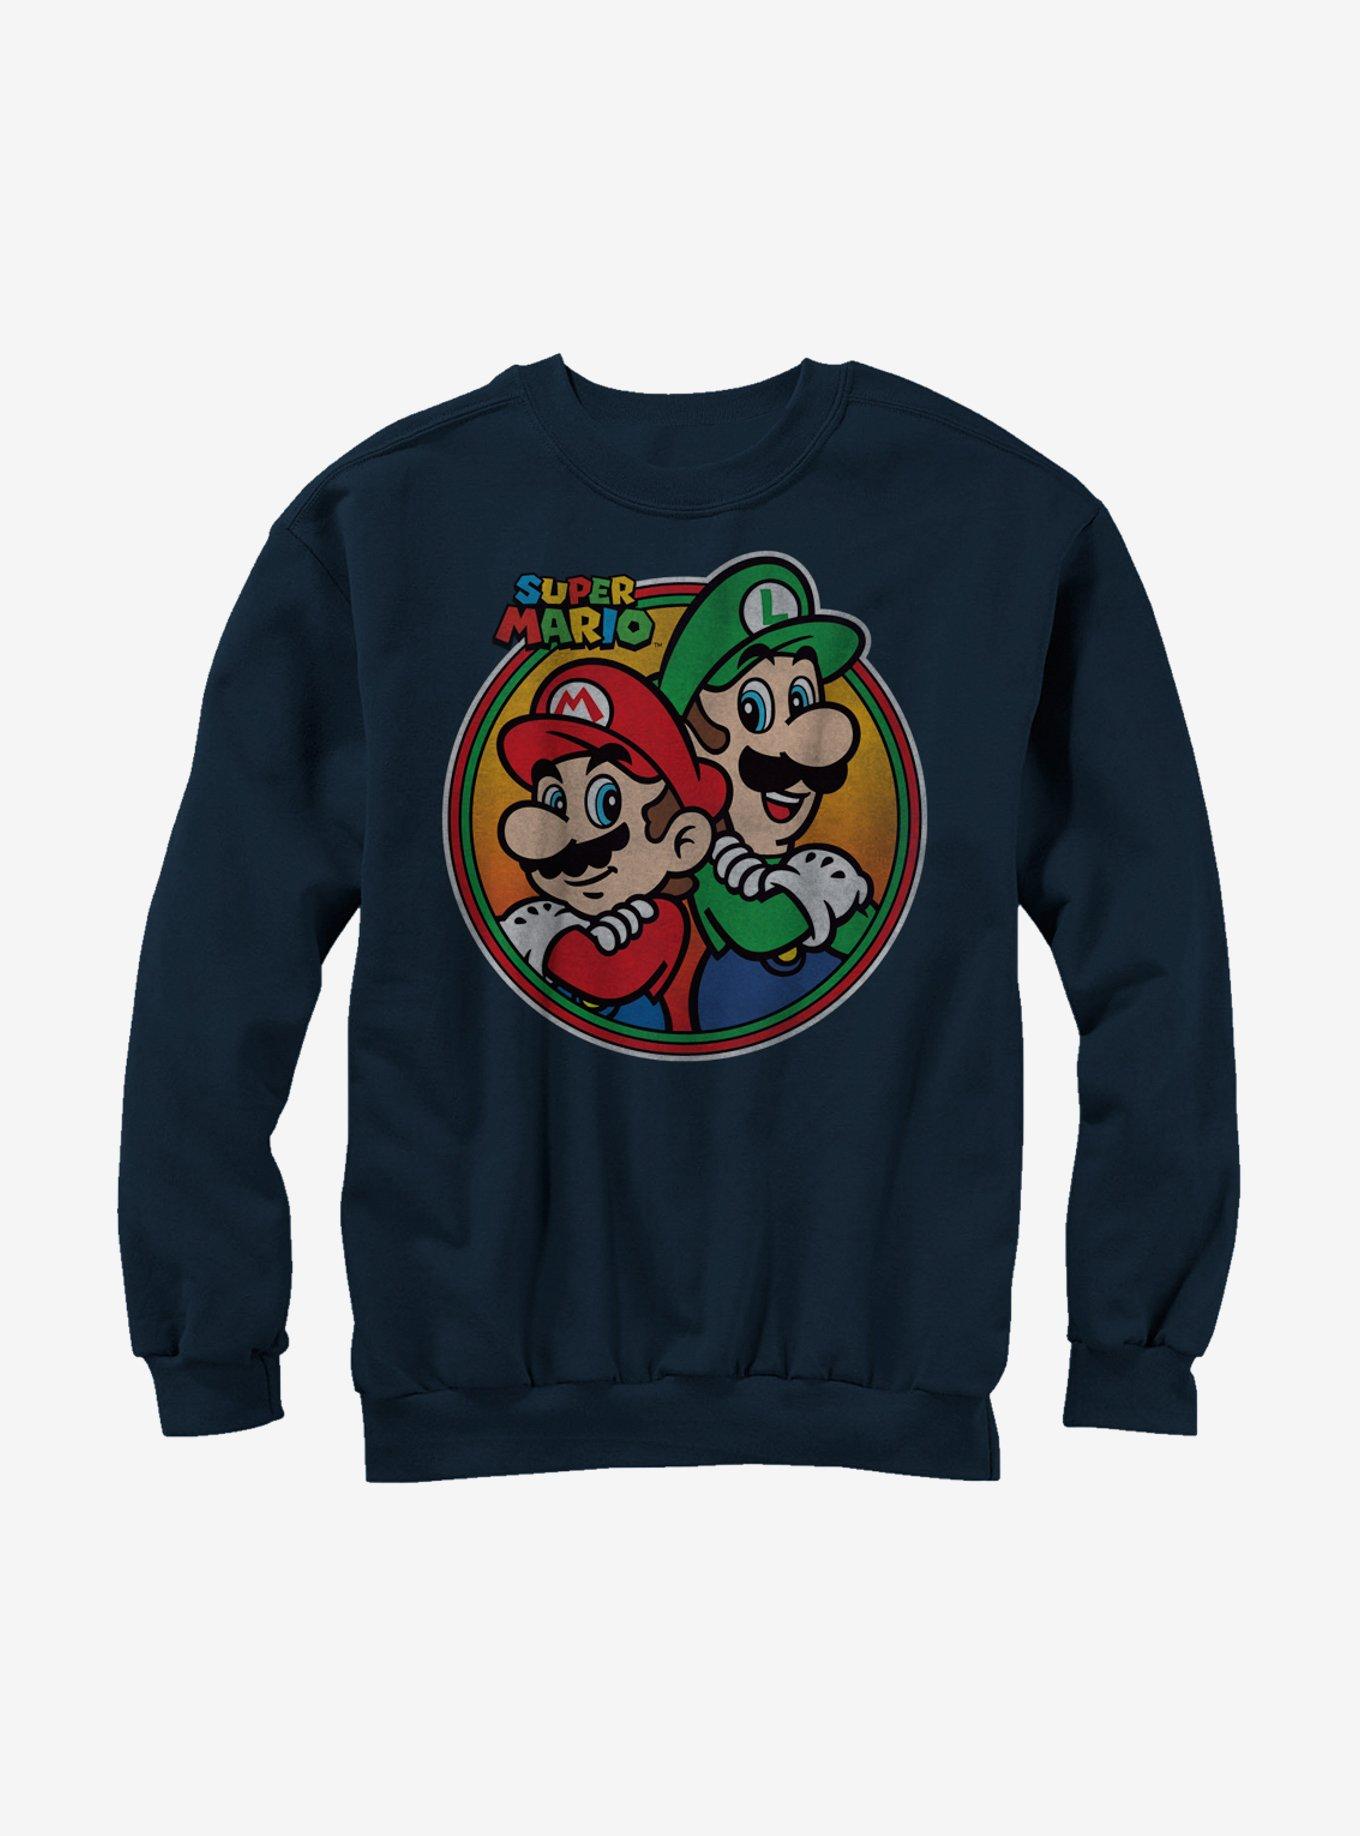 Nintendo Super Mario Bros. & Luigi Back To Sweatshirt